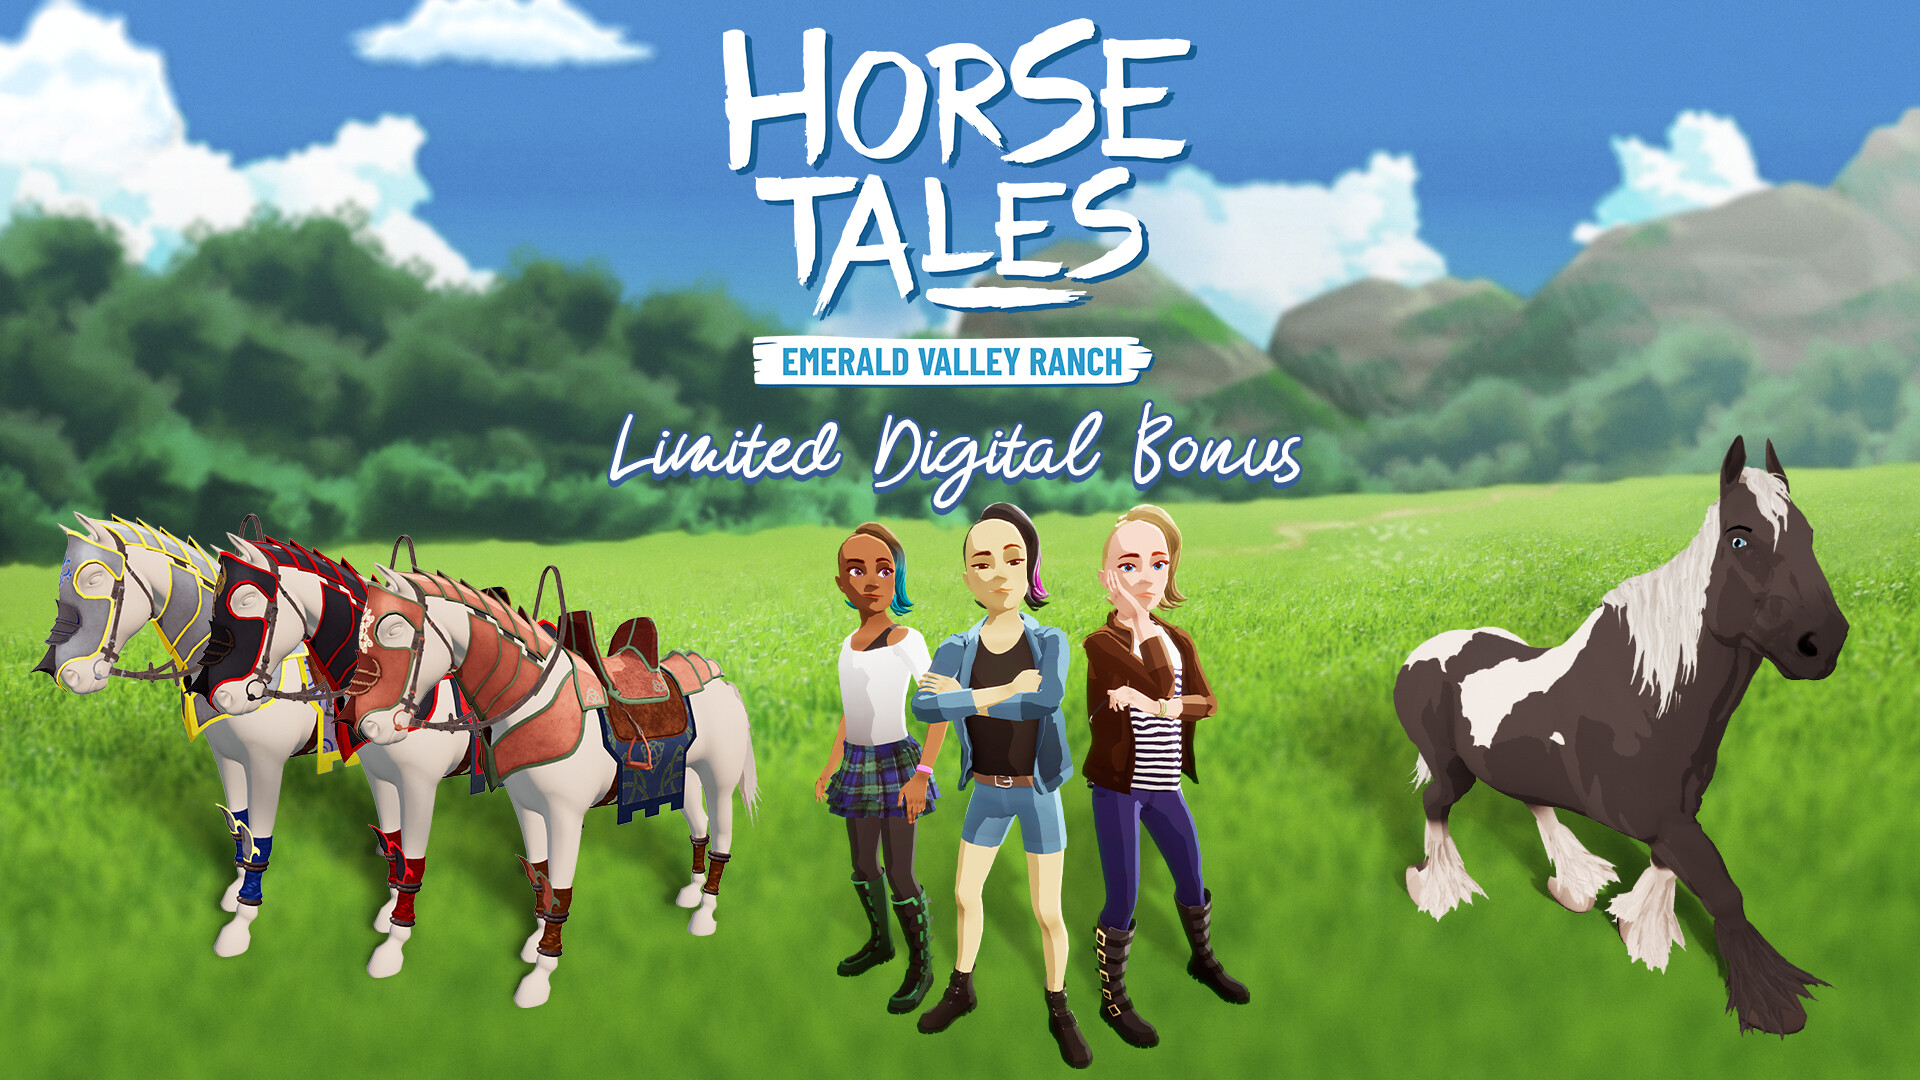 Horse Tales: Emerald Valley Ranch - Limited Digital Bonus DLC EU PS4 CD Key 3.38 $